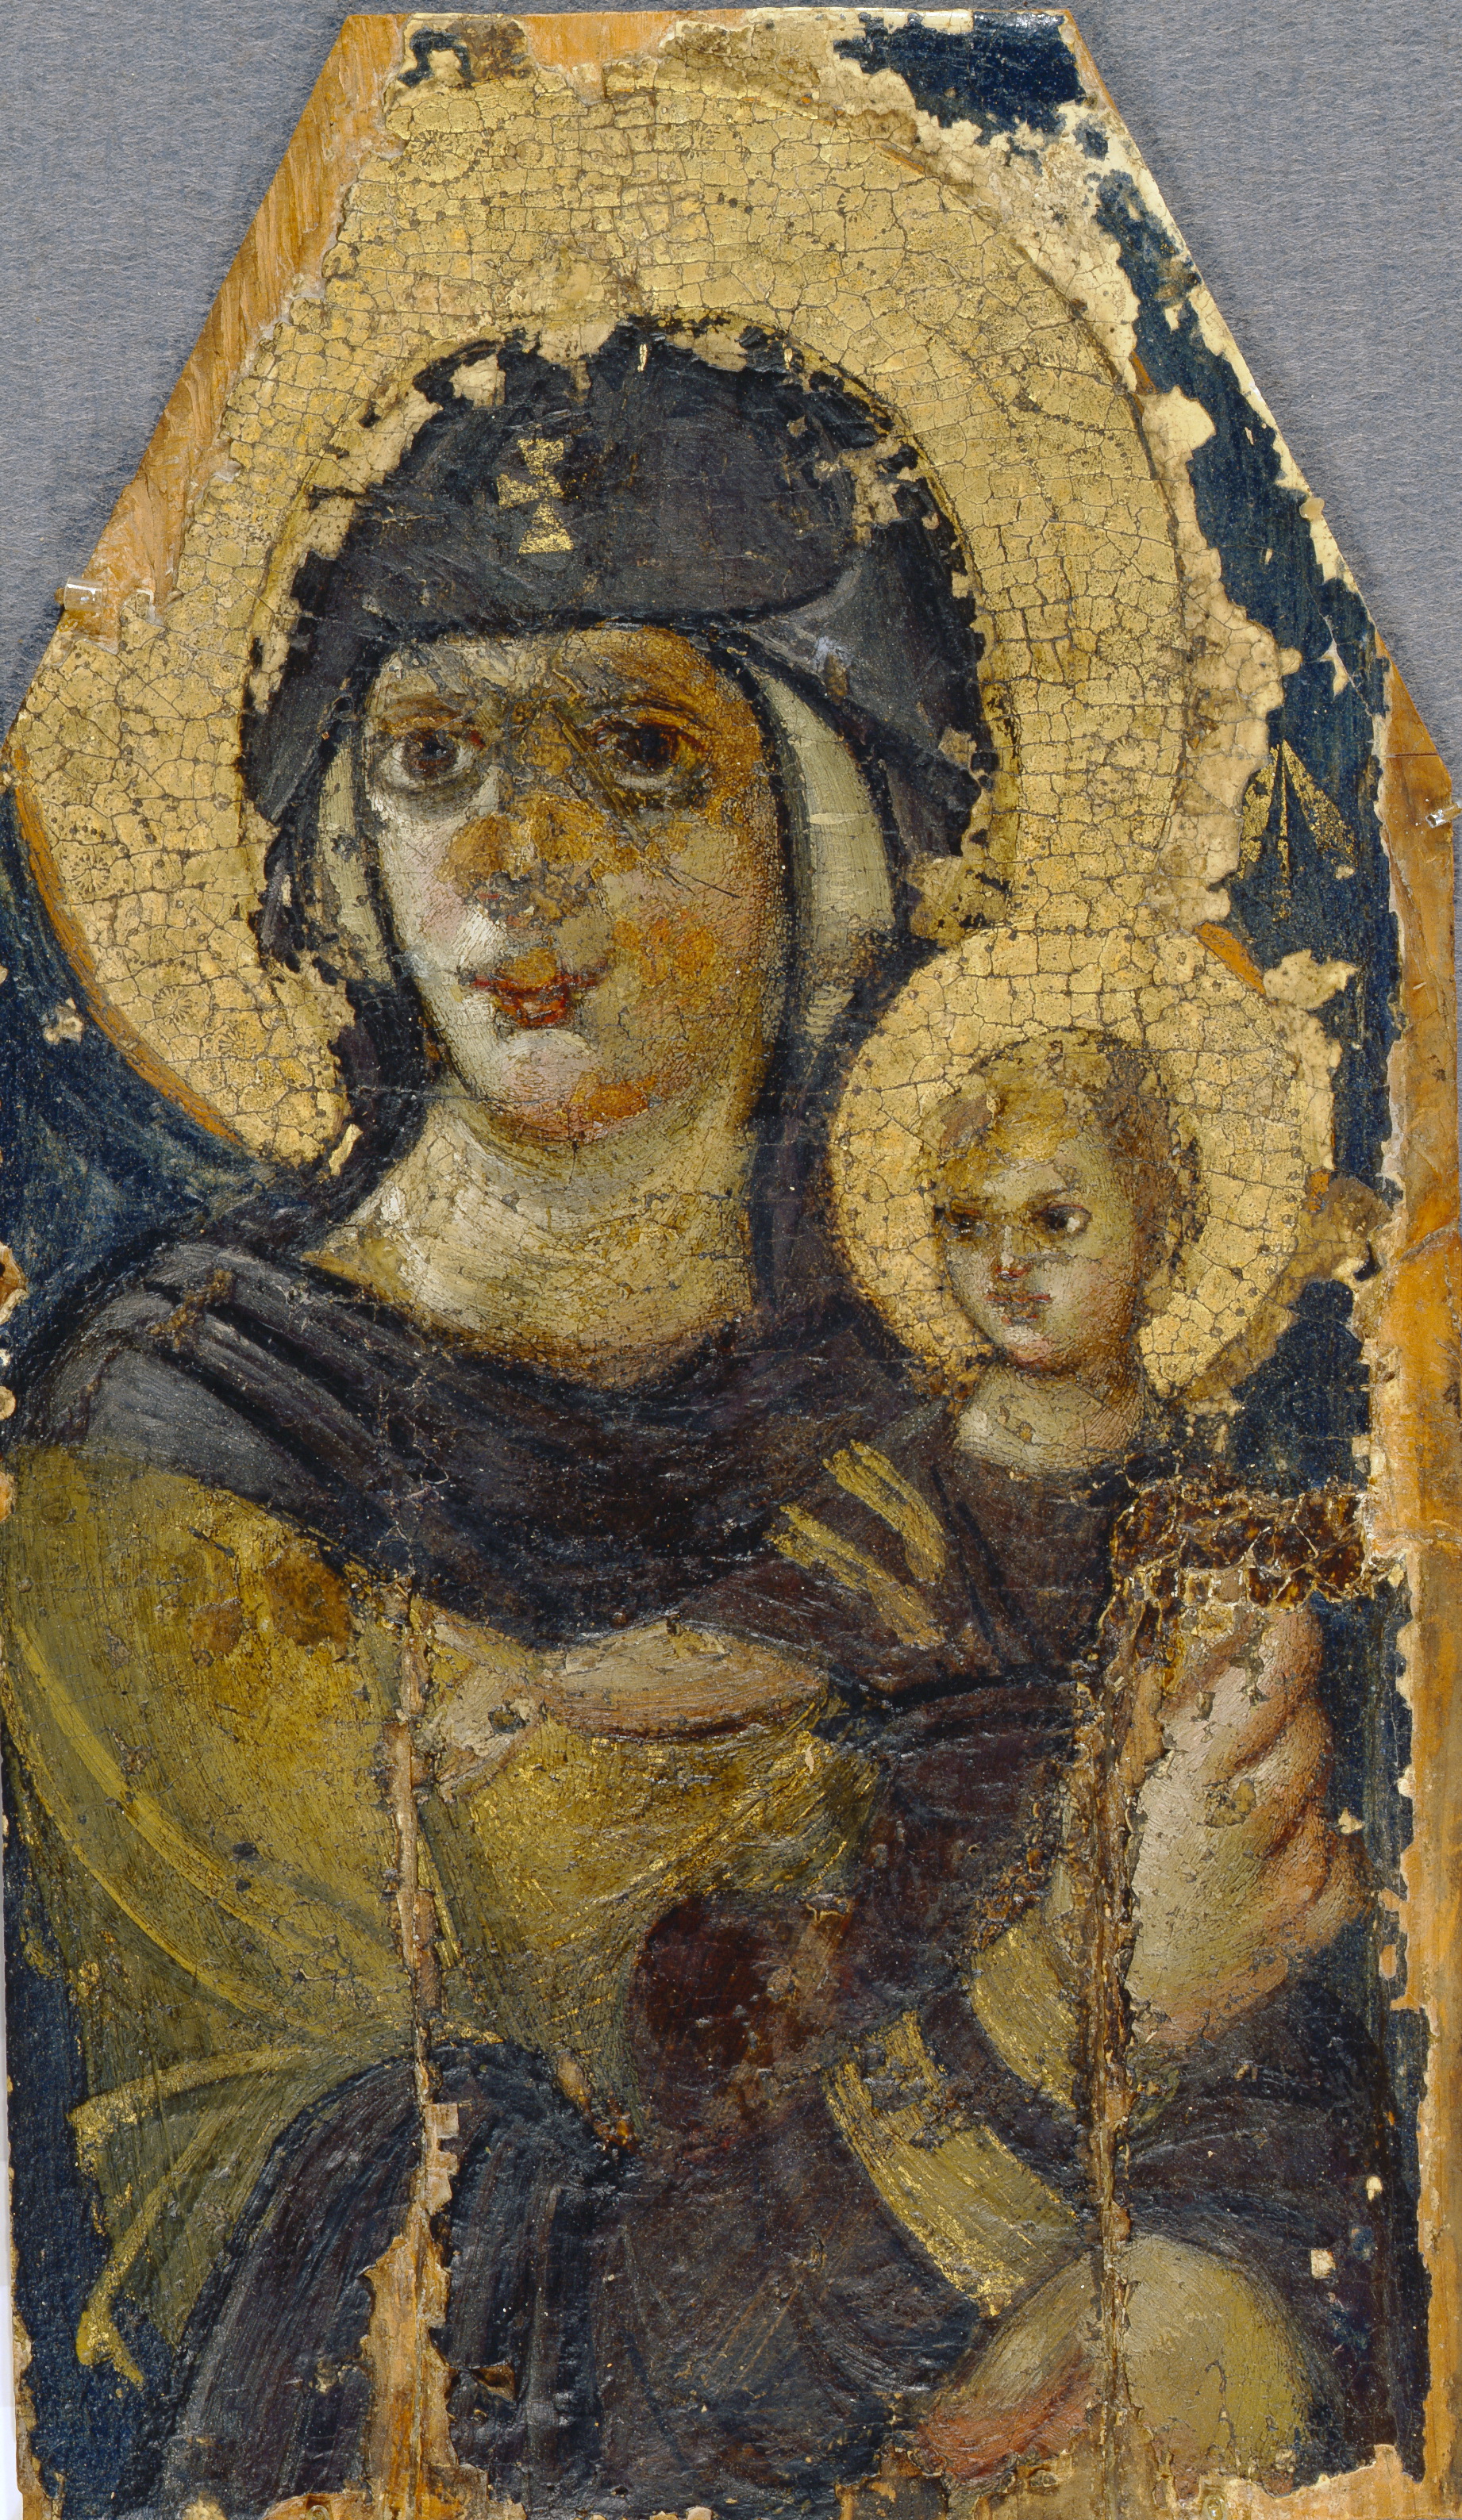 Ікона «Богоматір з немовлям». Візантія, 6 століття. З колекції отця Порфирія Успенського